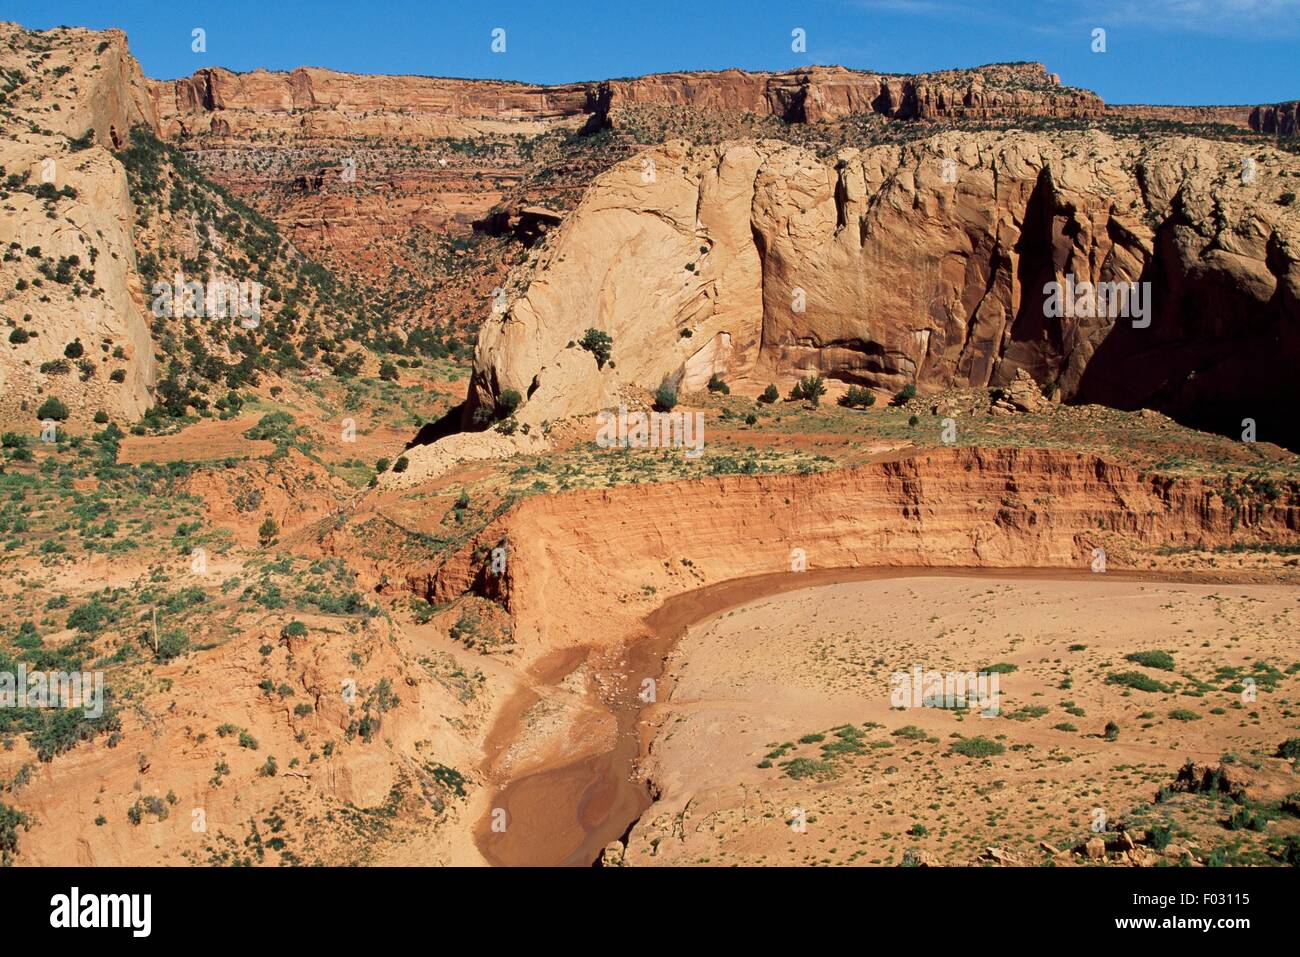 Lance de Mesa, Sainte-savine, Monument Valley, Arizona et l'Utah, États-Unis d'Amérique. Banque D'Images